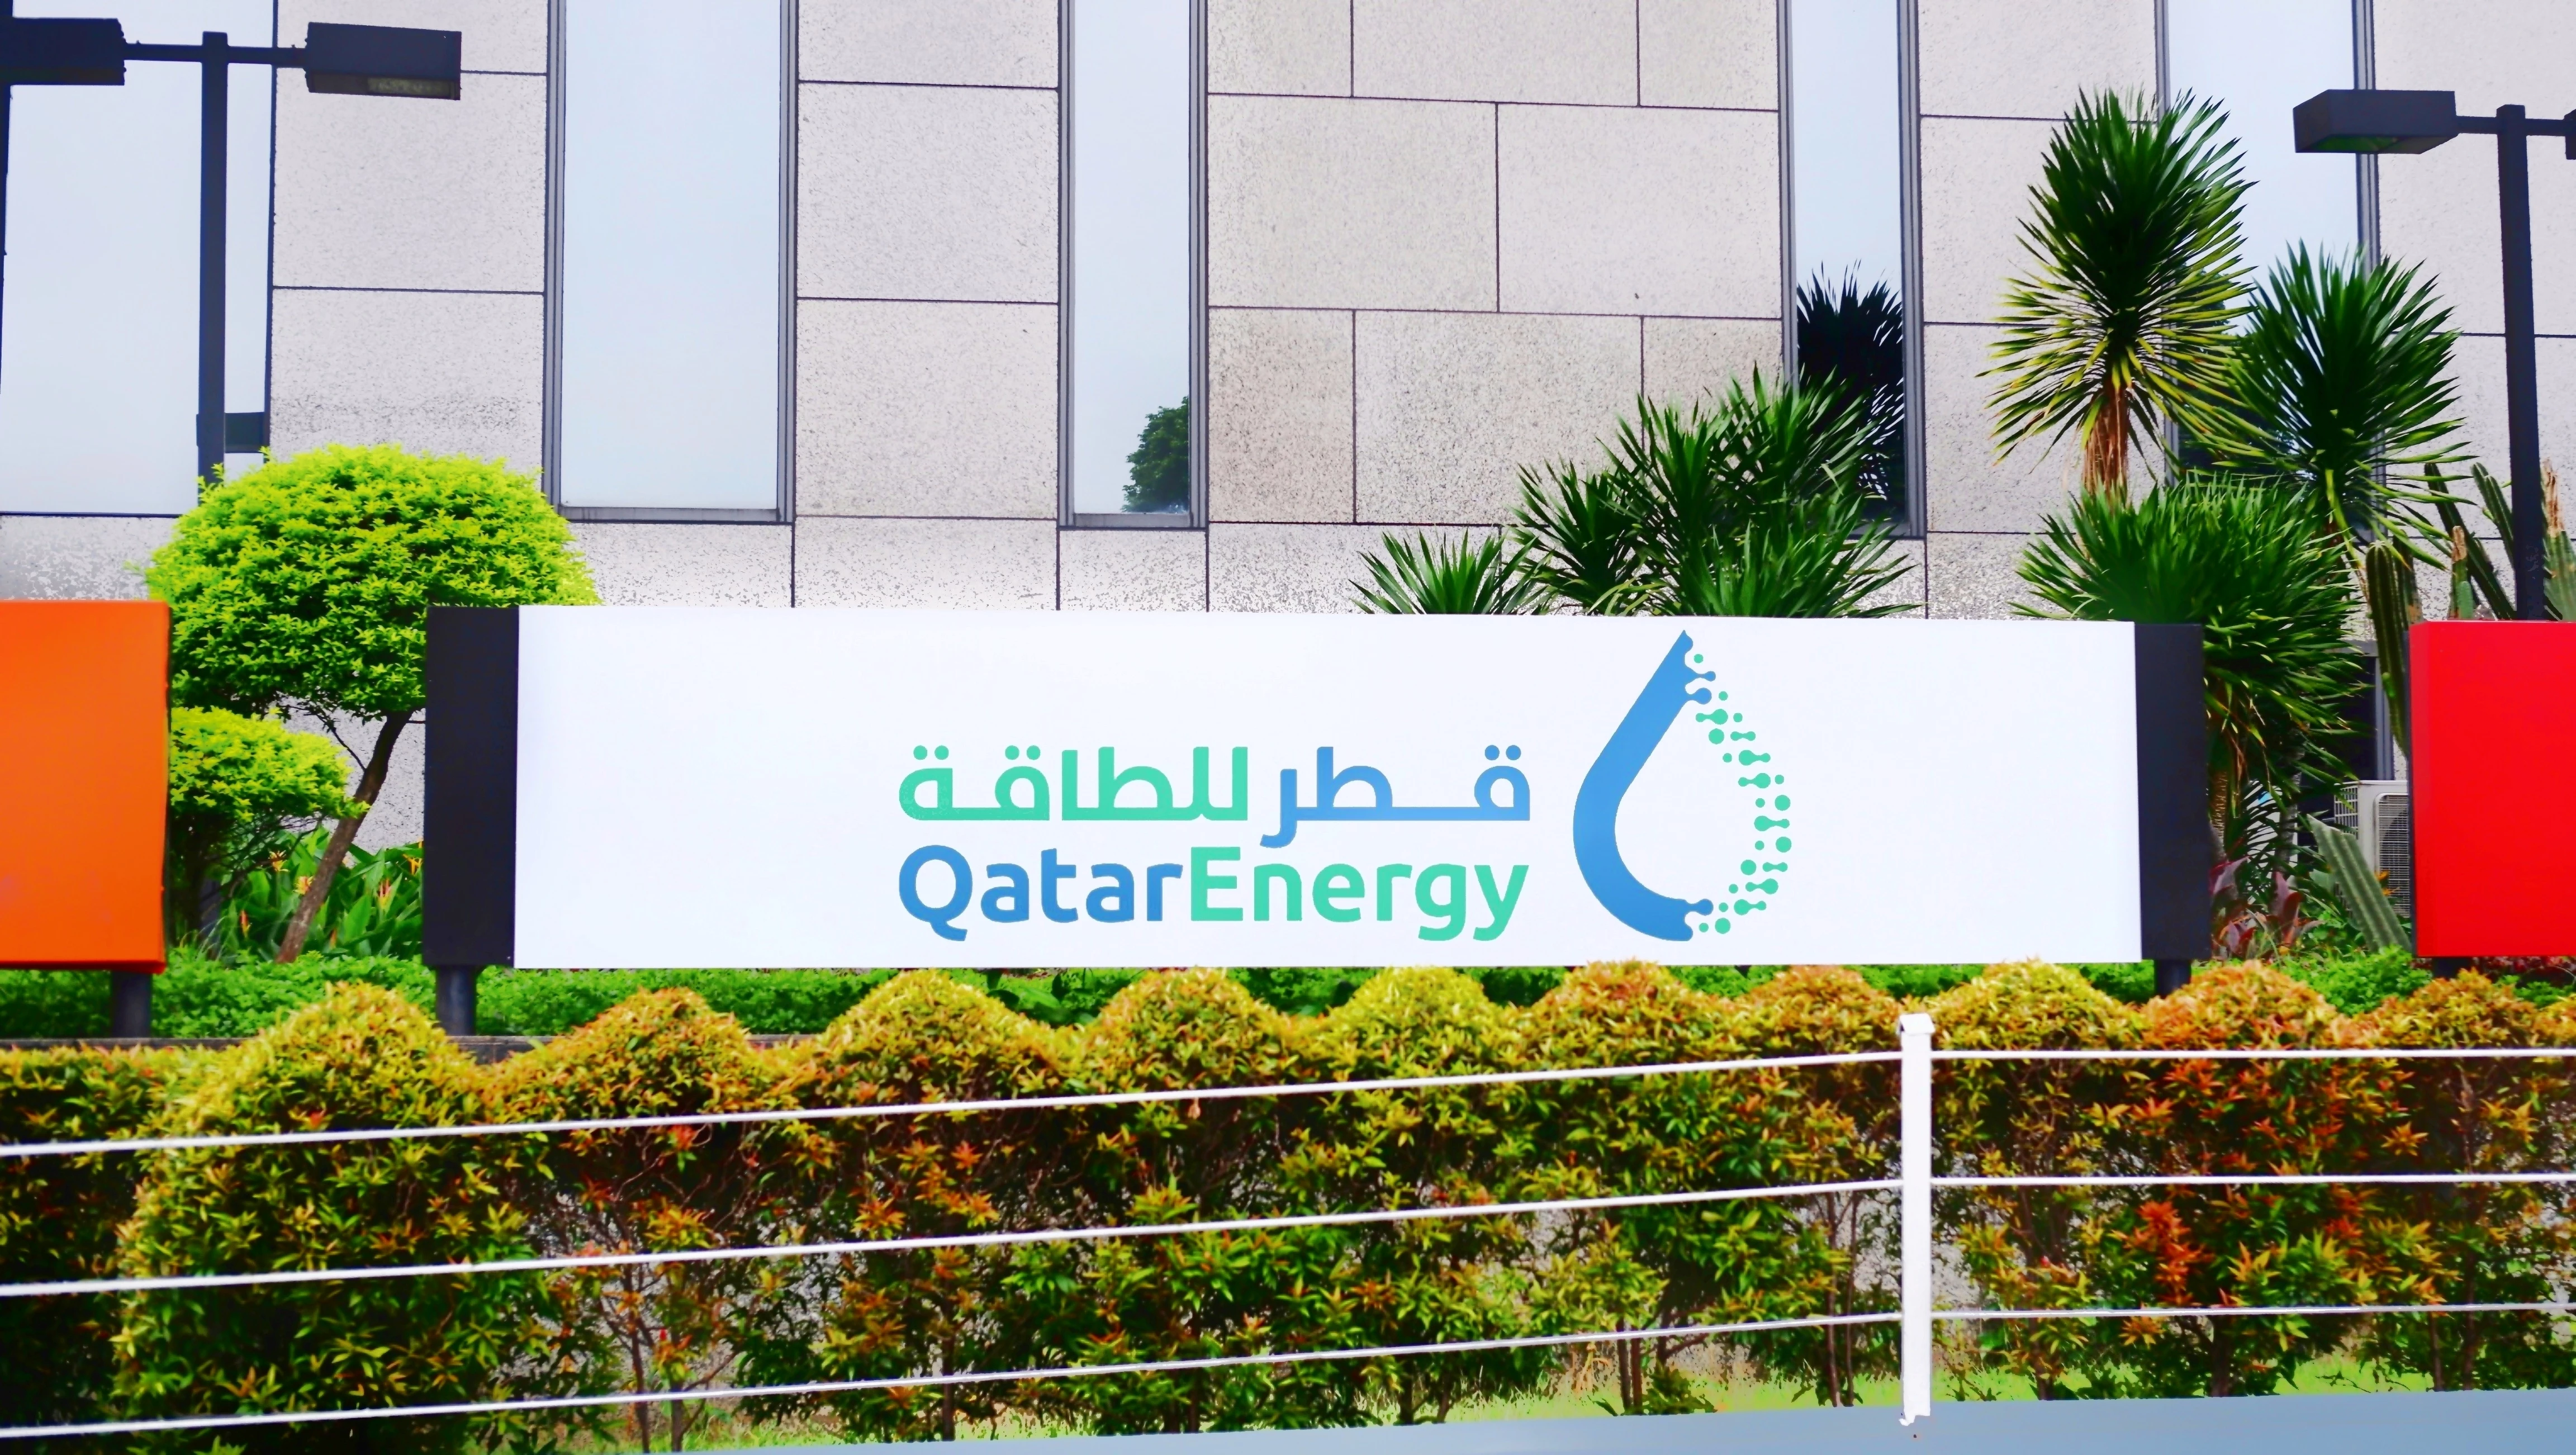 Qatarenergy